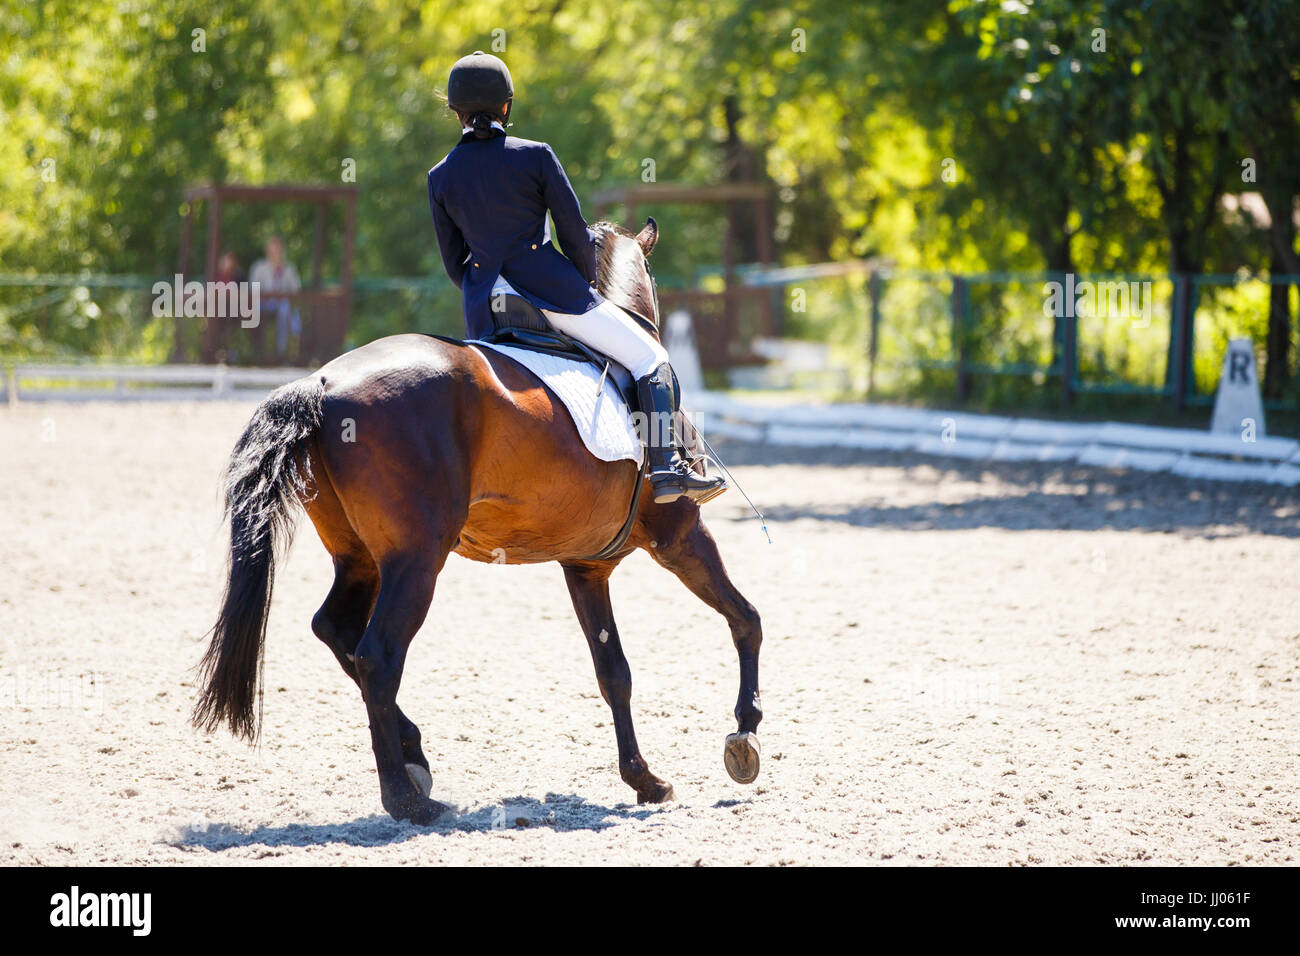 Chiudere l immagine del cavallo con pilota a dressage equestrian competizioni sportive. I dettagli delle attrezzature equestri Foto Stock